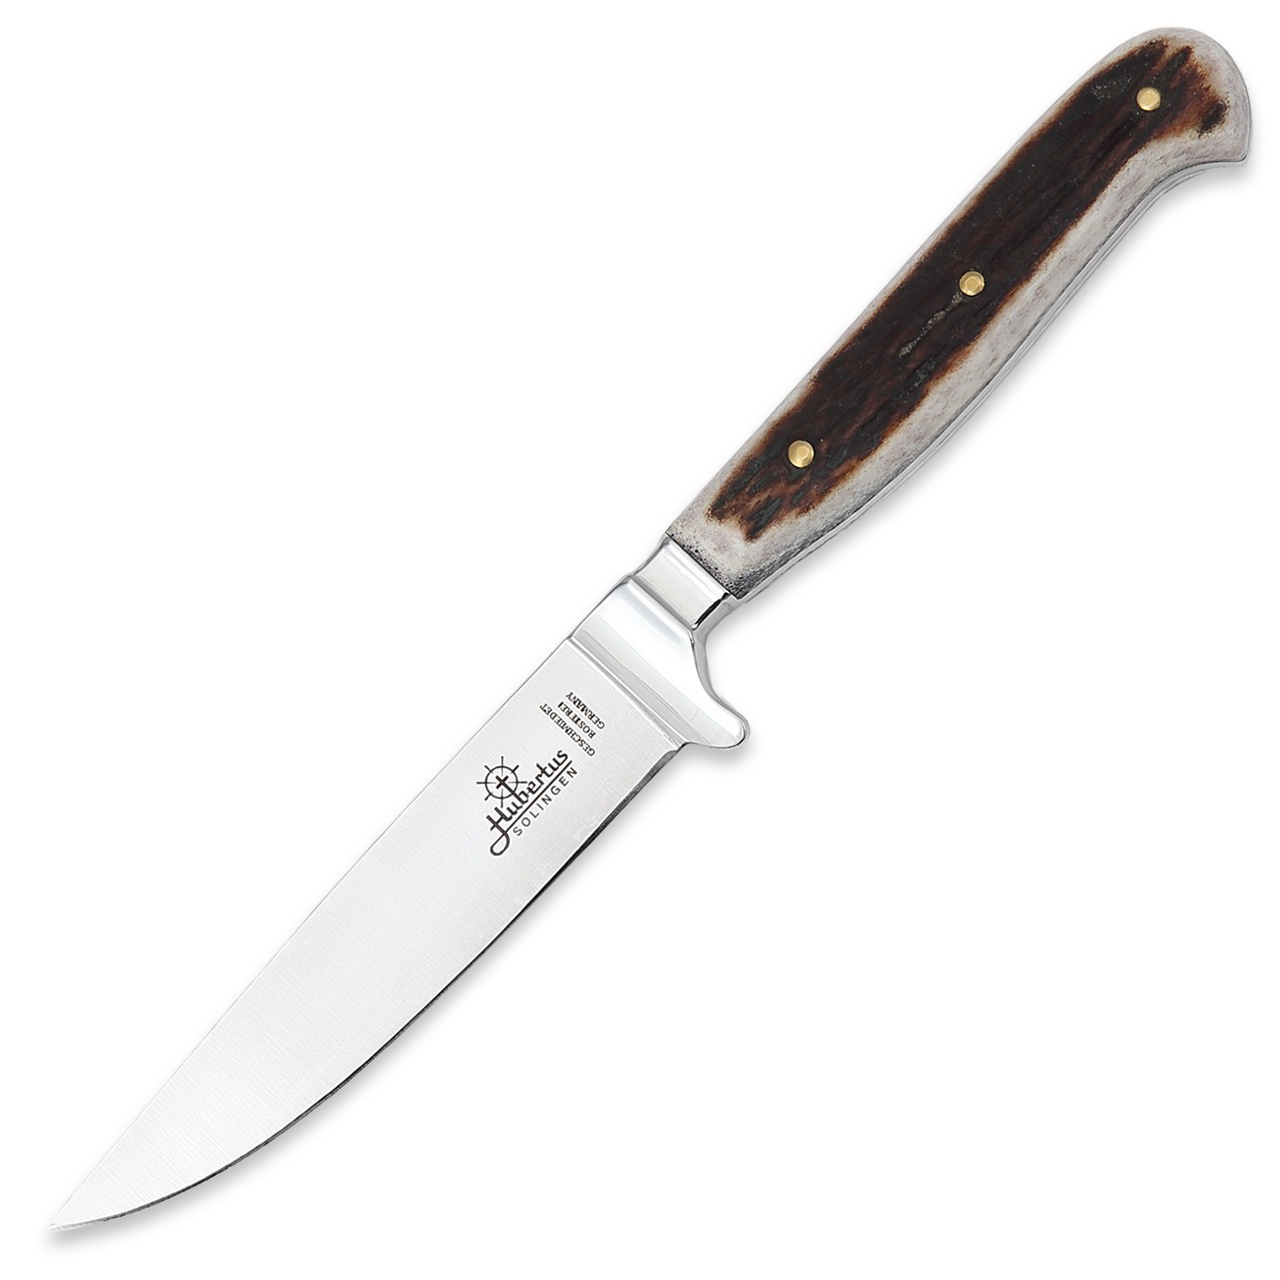 HUBERTUS Classic German Hunting Knife